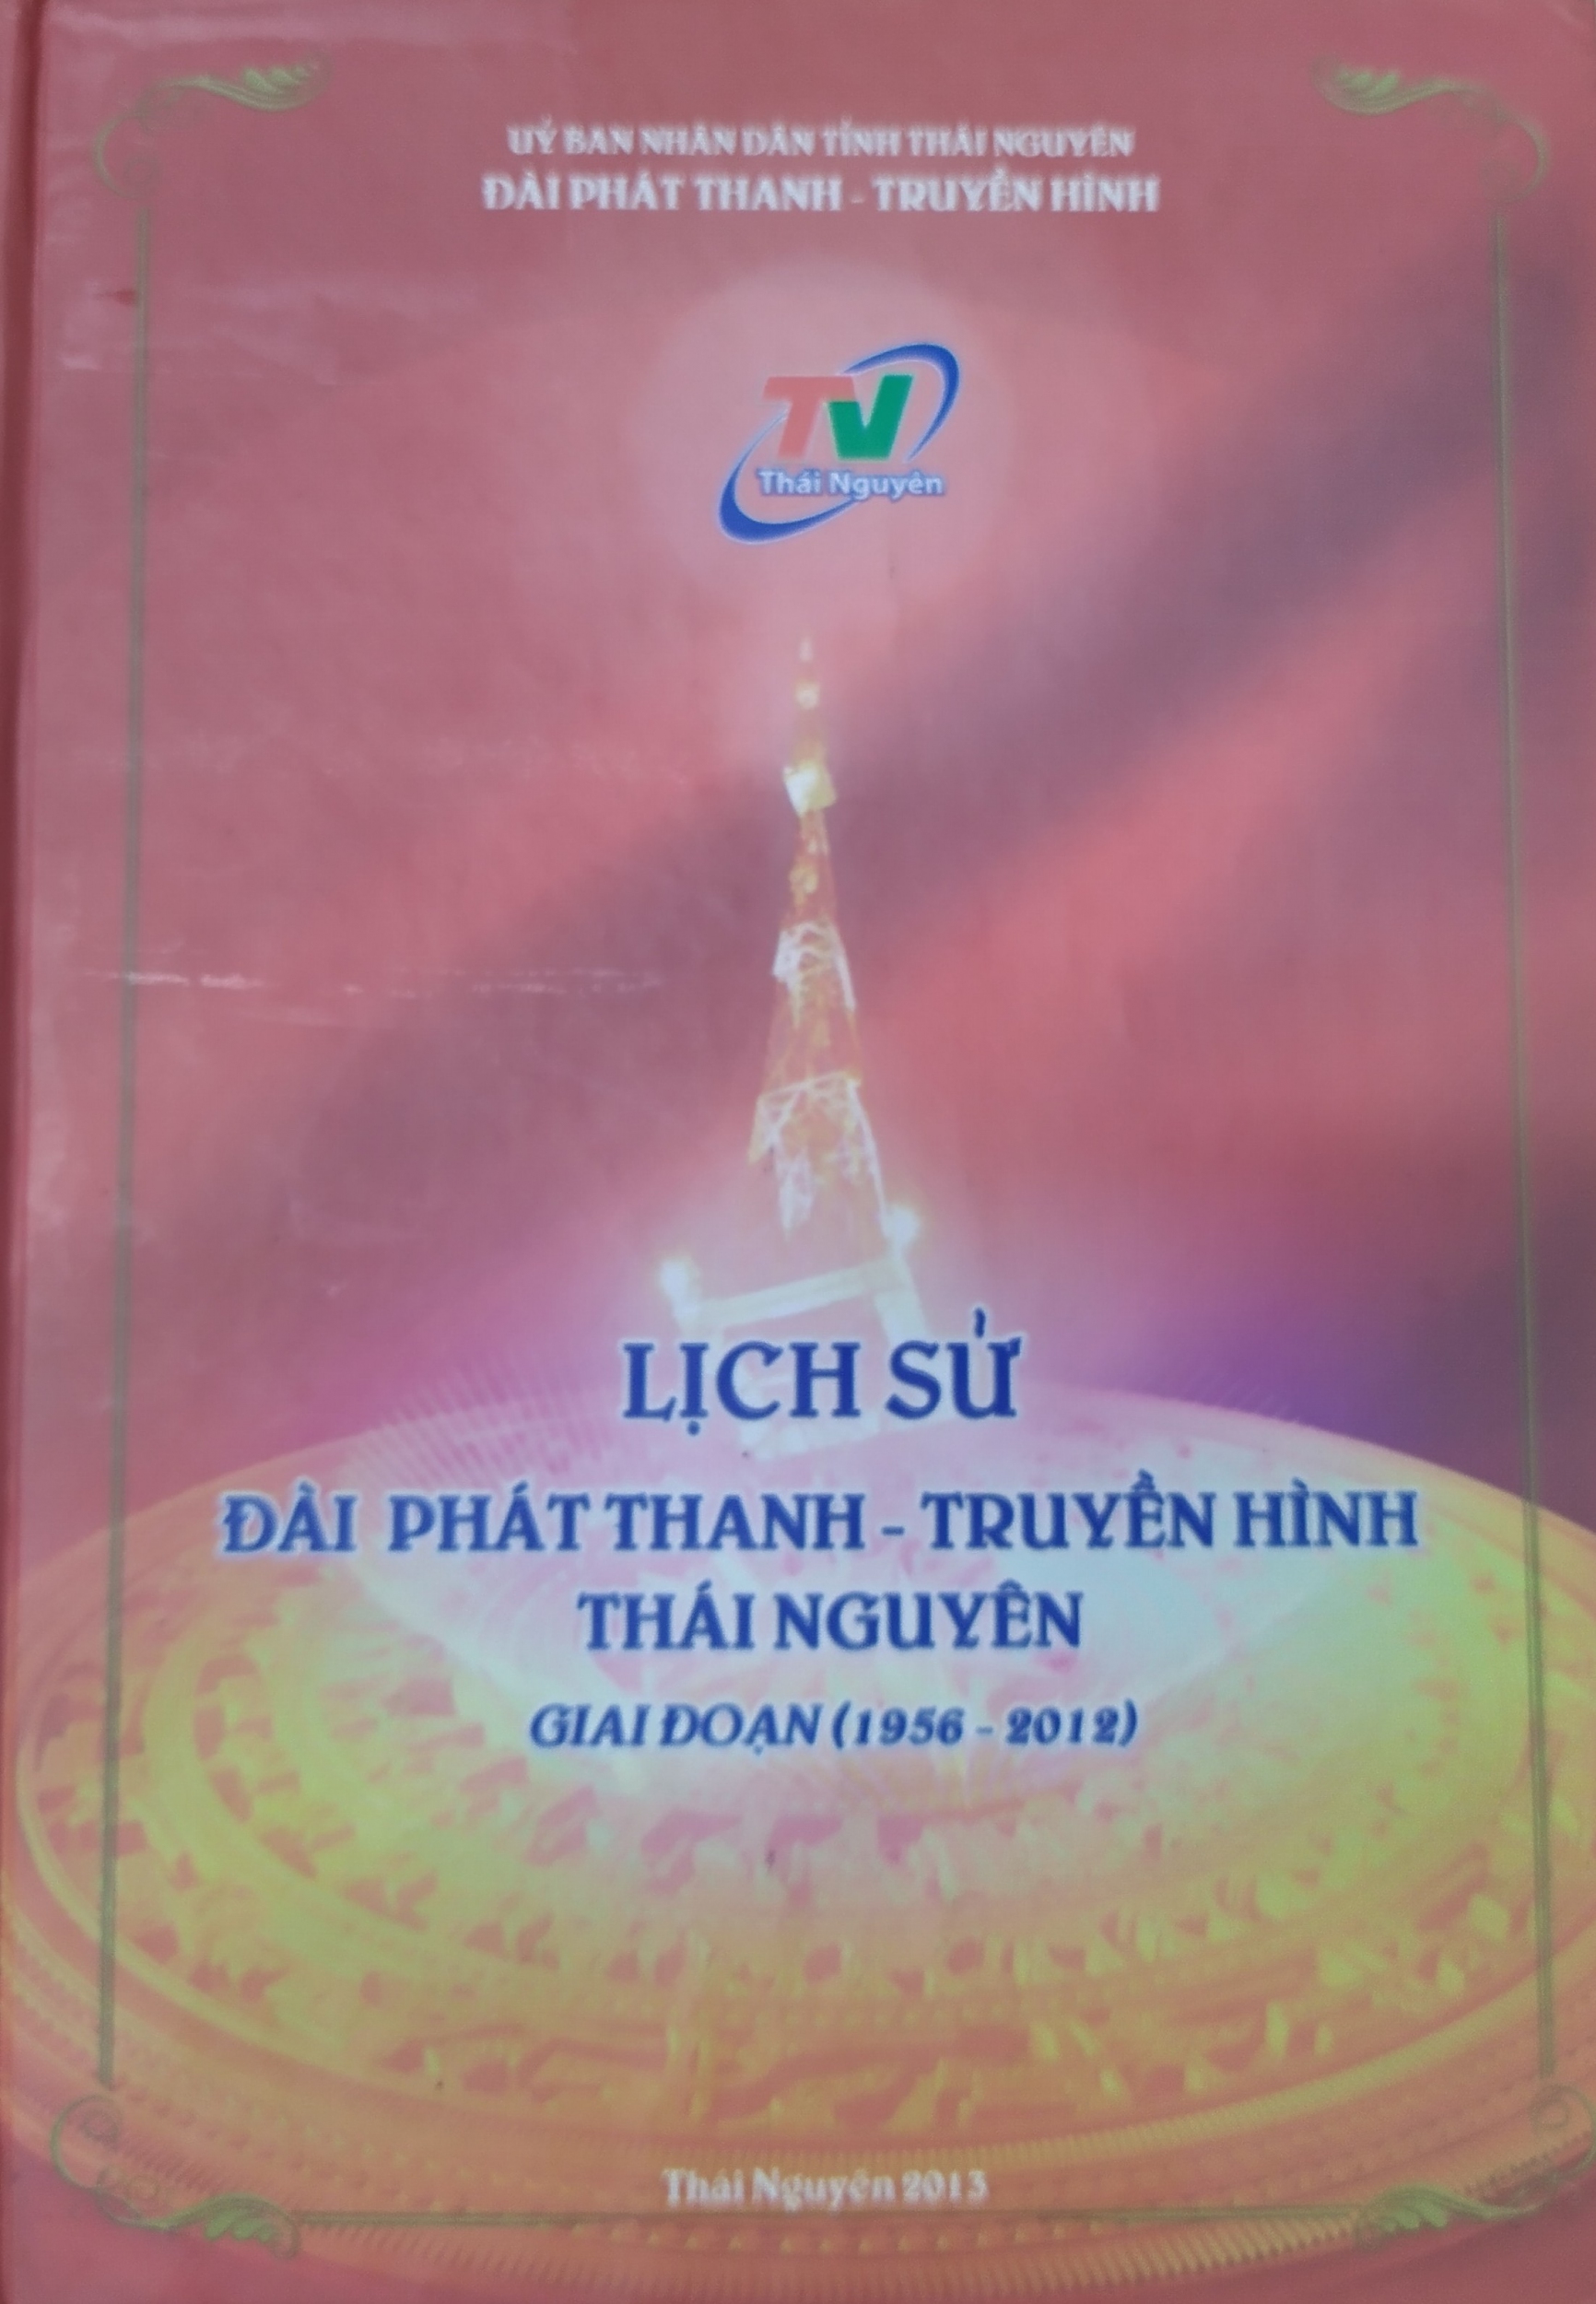 Lịch sử Đài Phát thanh - Truyền hình Thái Nguyên giai đoạn (1956 - 2012)